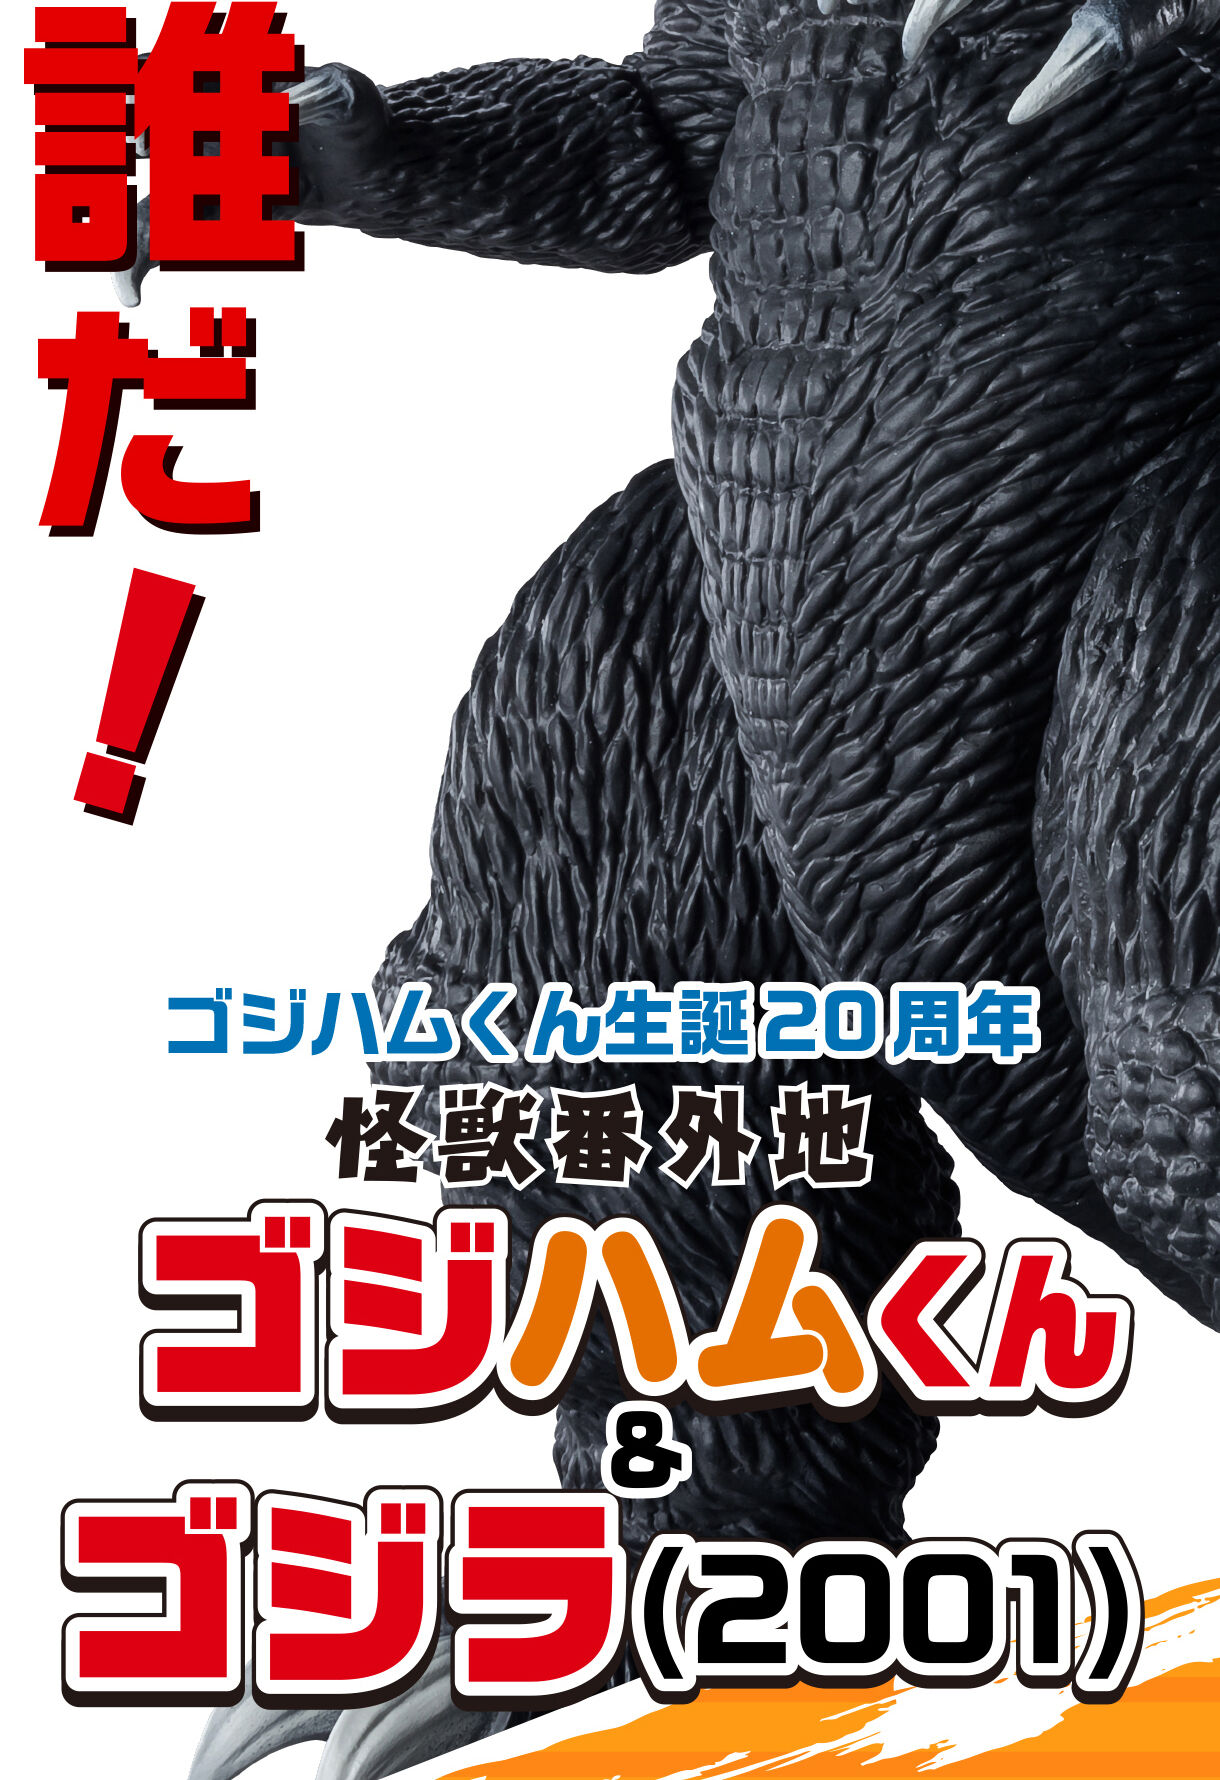 怪獣番外地 ゴジハムくん & ゴジラ(2001) | ゴジラシリーズ